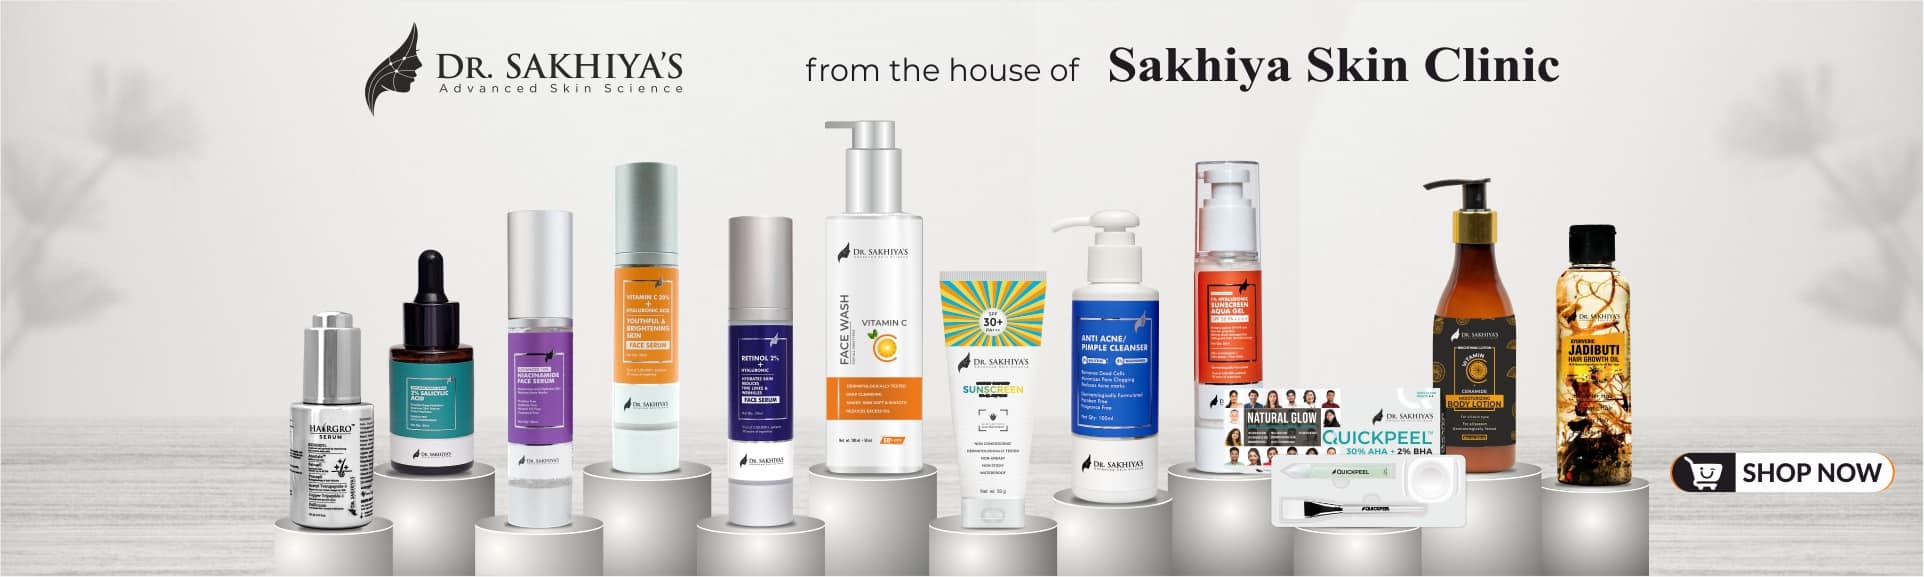 Sakhiya Skin Clinic Dermatologically Formulated Products